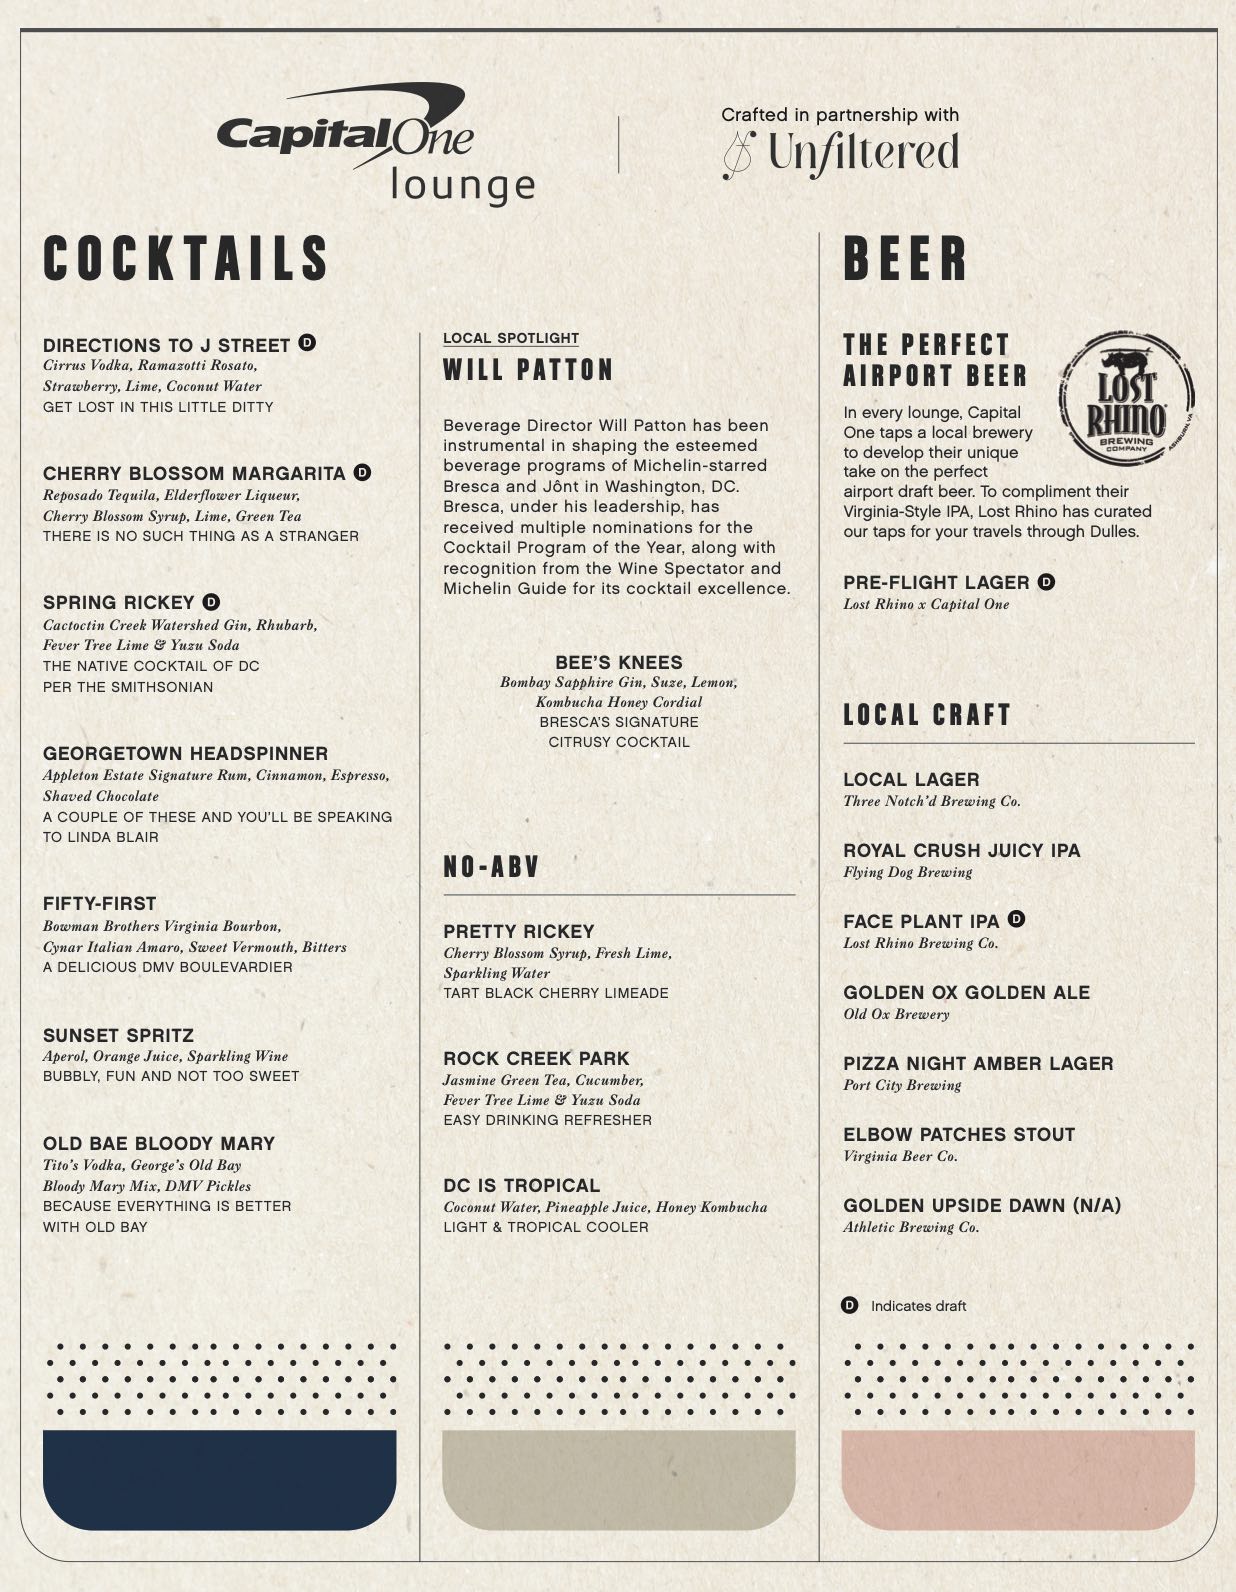 a menu of a bar